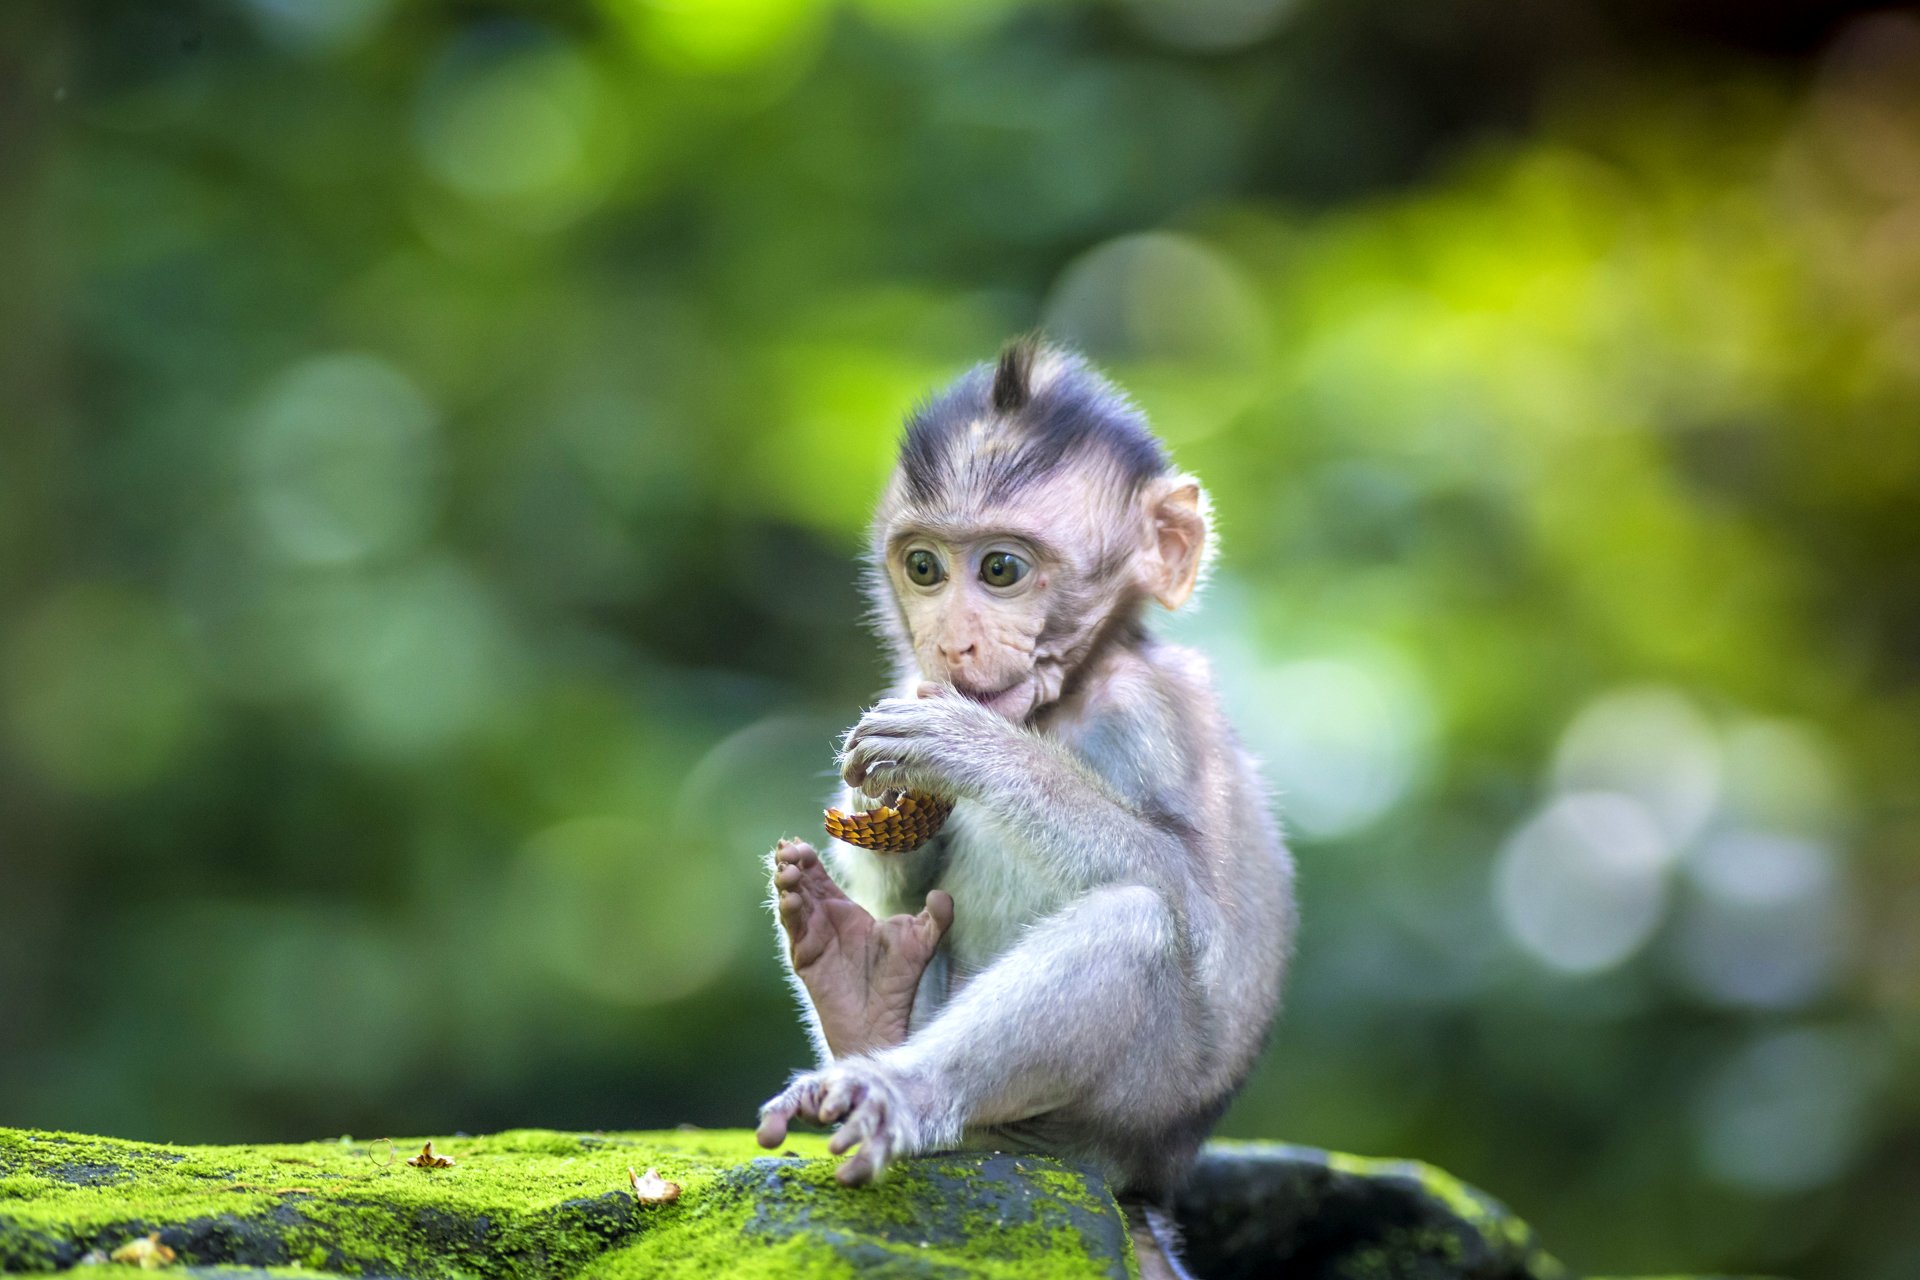 Đây đã có thể là chú khỉ dễ thương và độc nhất thế giới nếu như